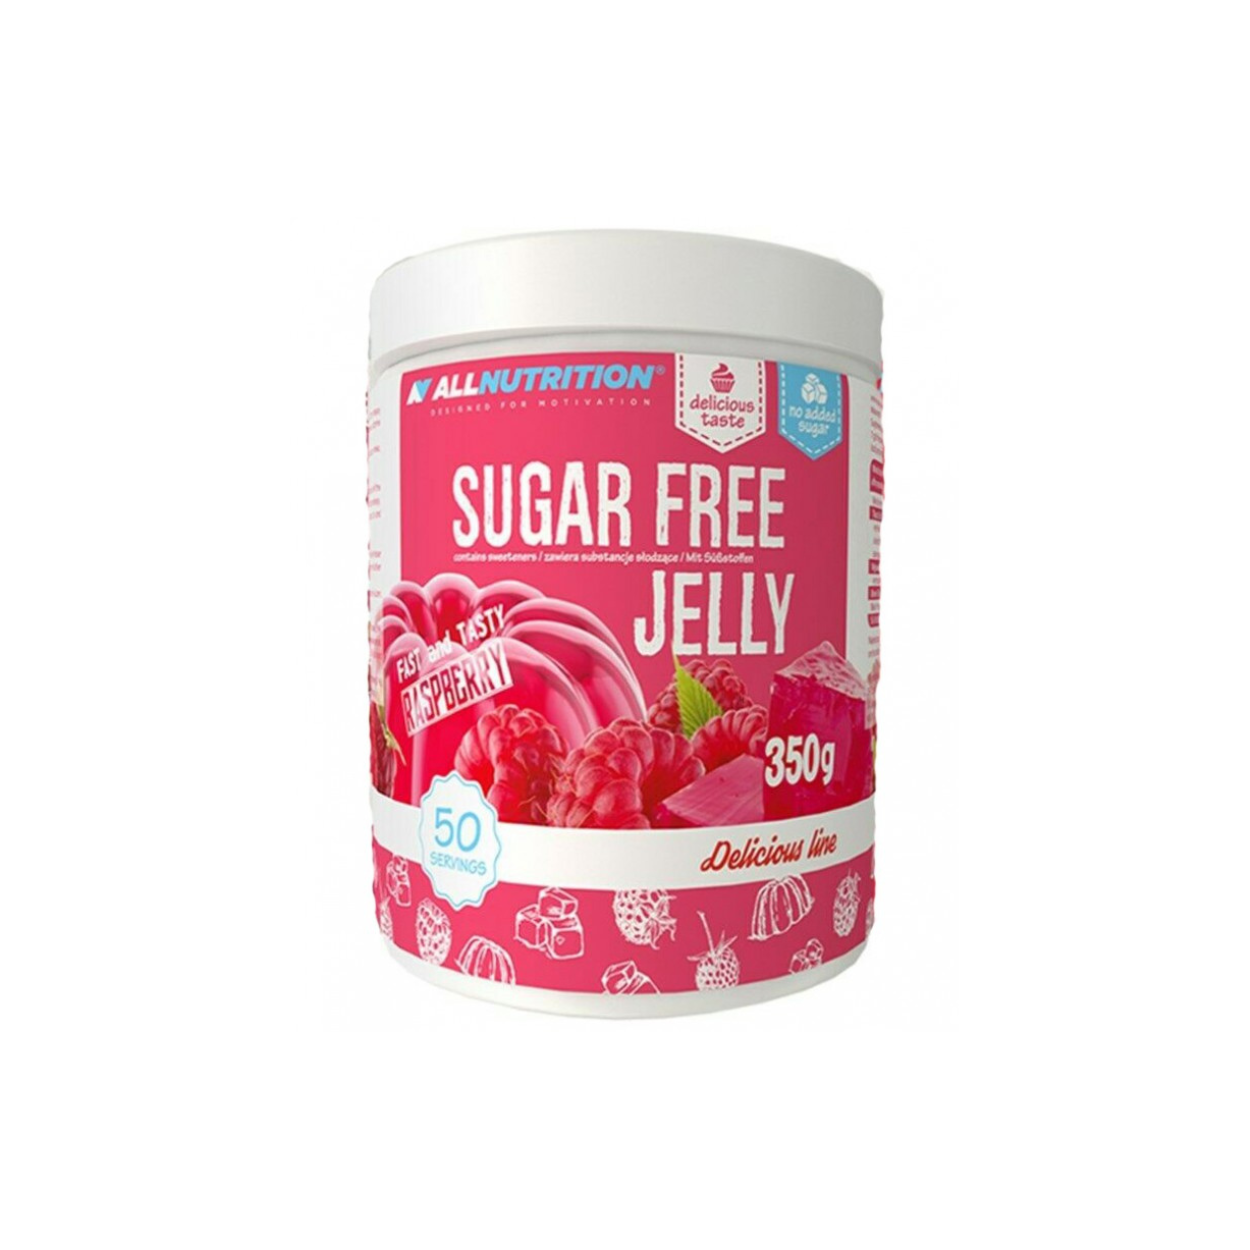 Allnutrition Delicious Line Sugar Free Jelly Raspberry (350g)